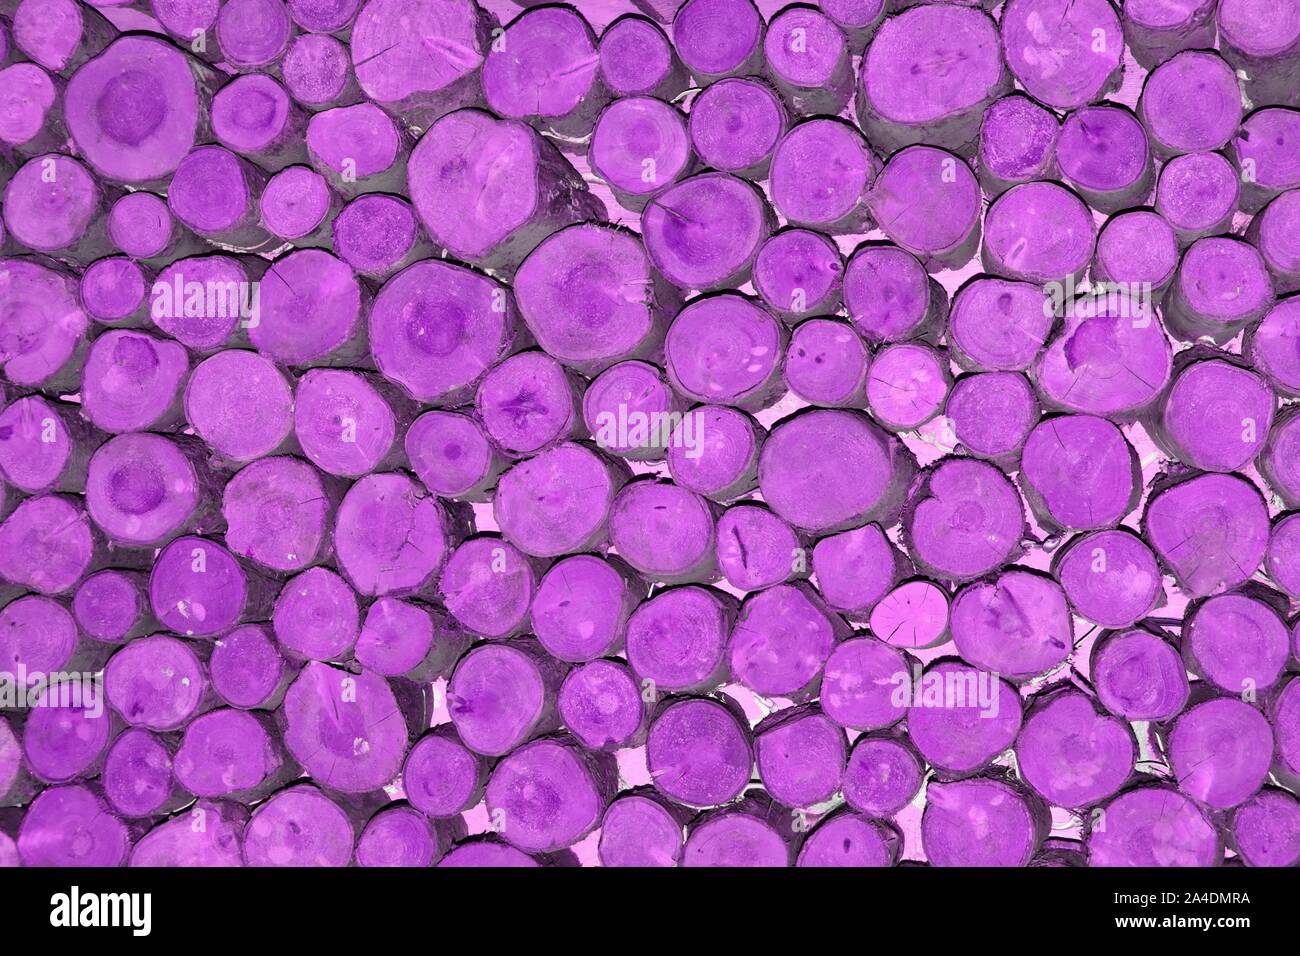 Zusammenfassung Hintergrund Muster Bild manipuliert lila Farbe an den Enden gestapelt kurze Längen von random Durchmesser runde Schnittholz angewandte Protokolle England Großbritannien Stockfoto